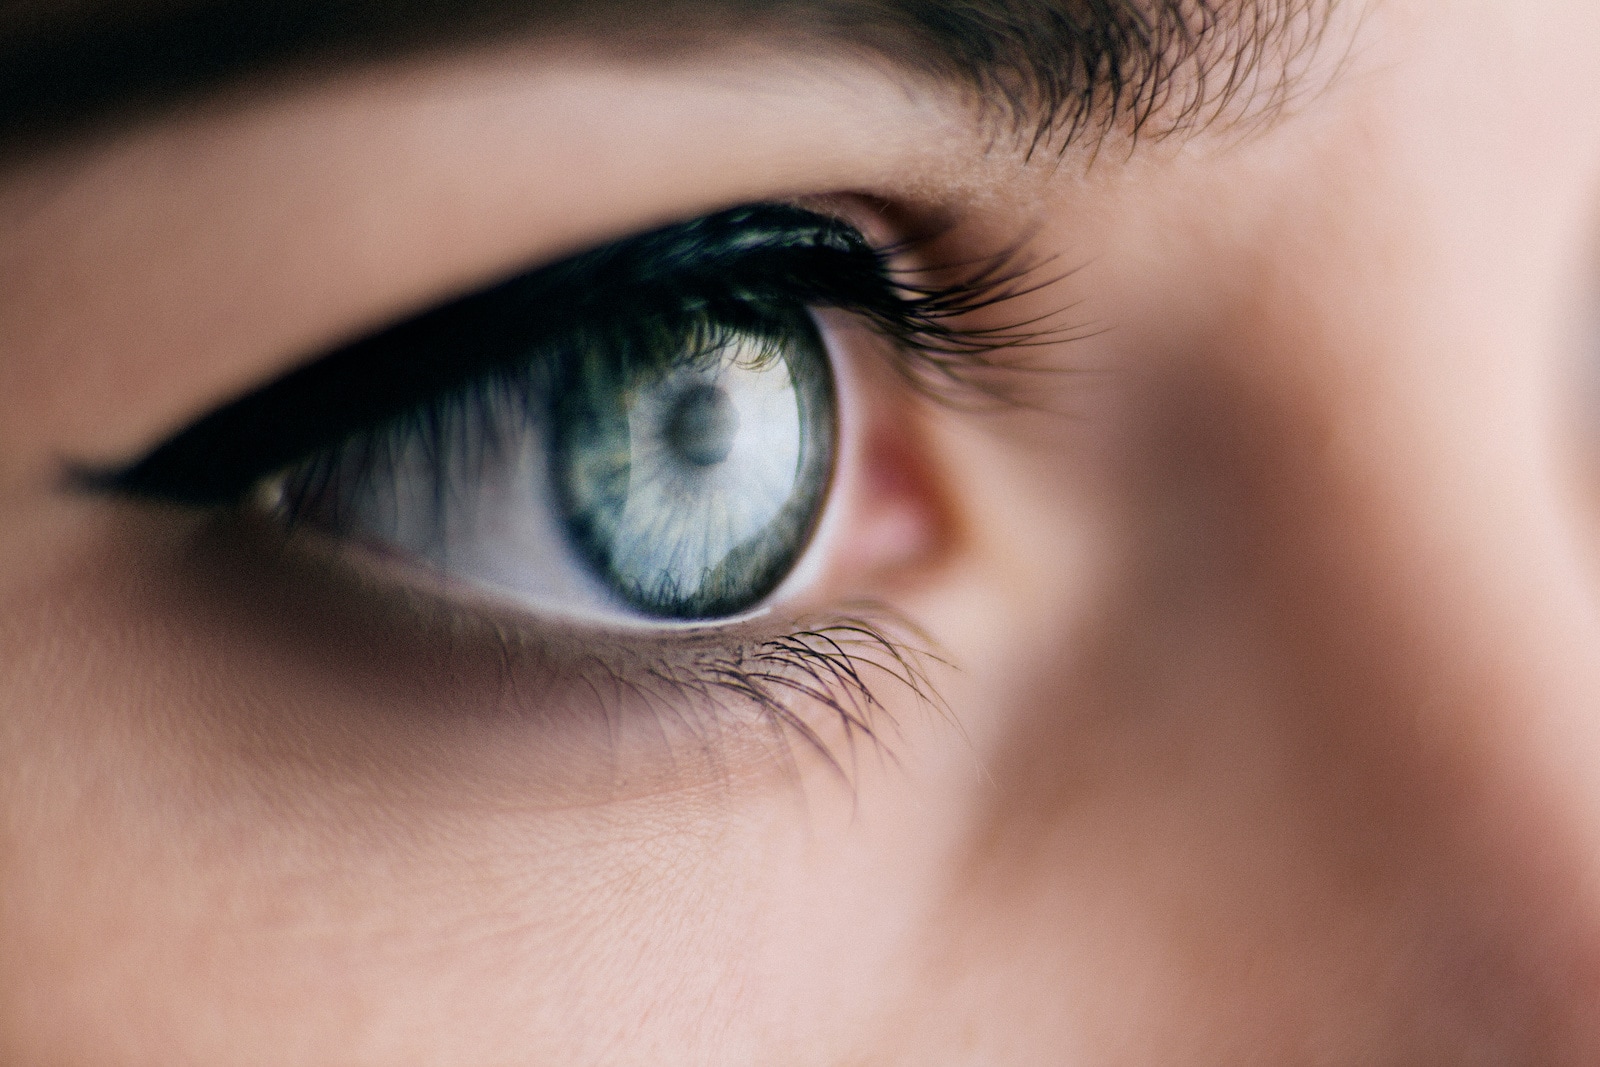 Mioza micsorarea pupilelor